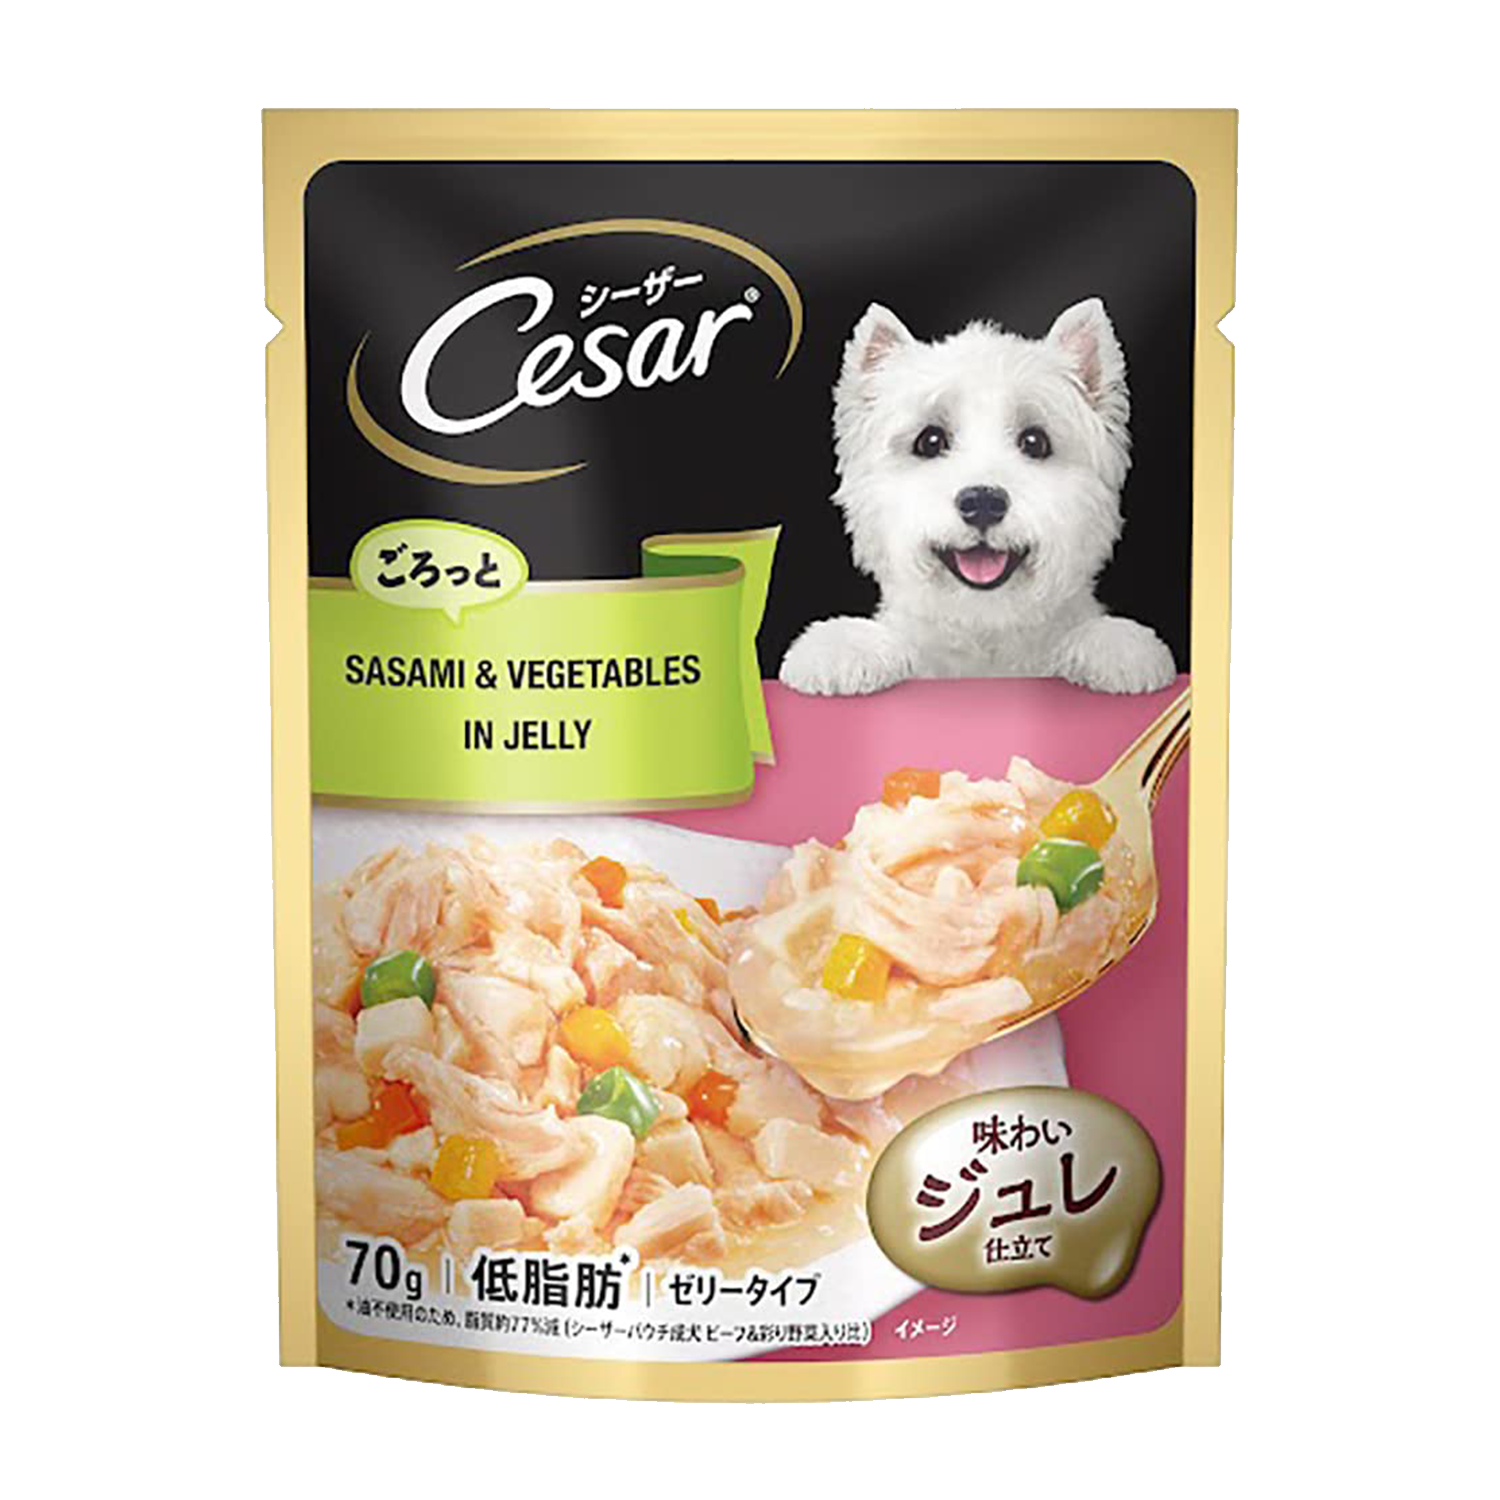 Sasami & Vegetables in Jelly Gourmet Meal | cesar | dog food | petzsetgo